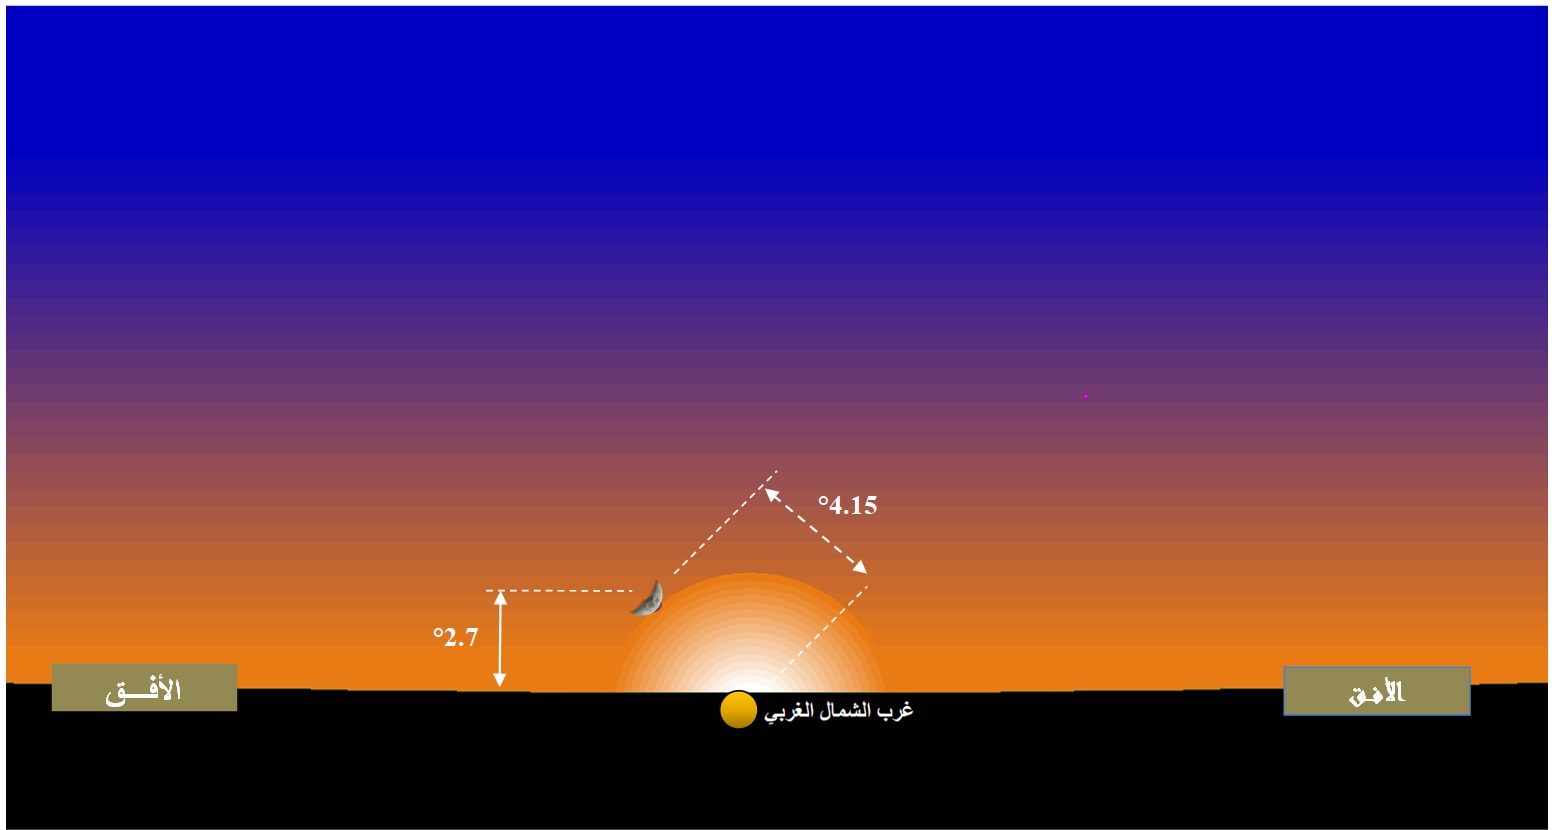 صورة 2 : وضع القمر عند الأفق الغربي بمدينة تونس،  عند غروب الشمس يوم الخميس 28 جويلية 2022 و تظهر الصورة المعطيات الفلكية من قوس (استطالة سطحية) و ارتفاع القمر.